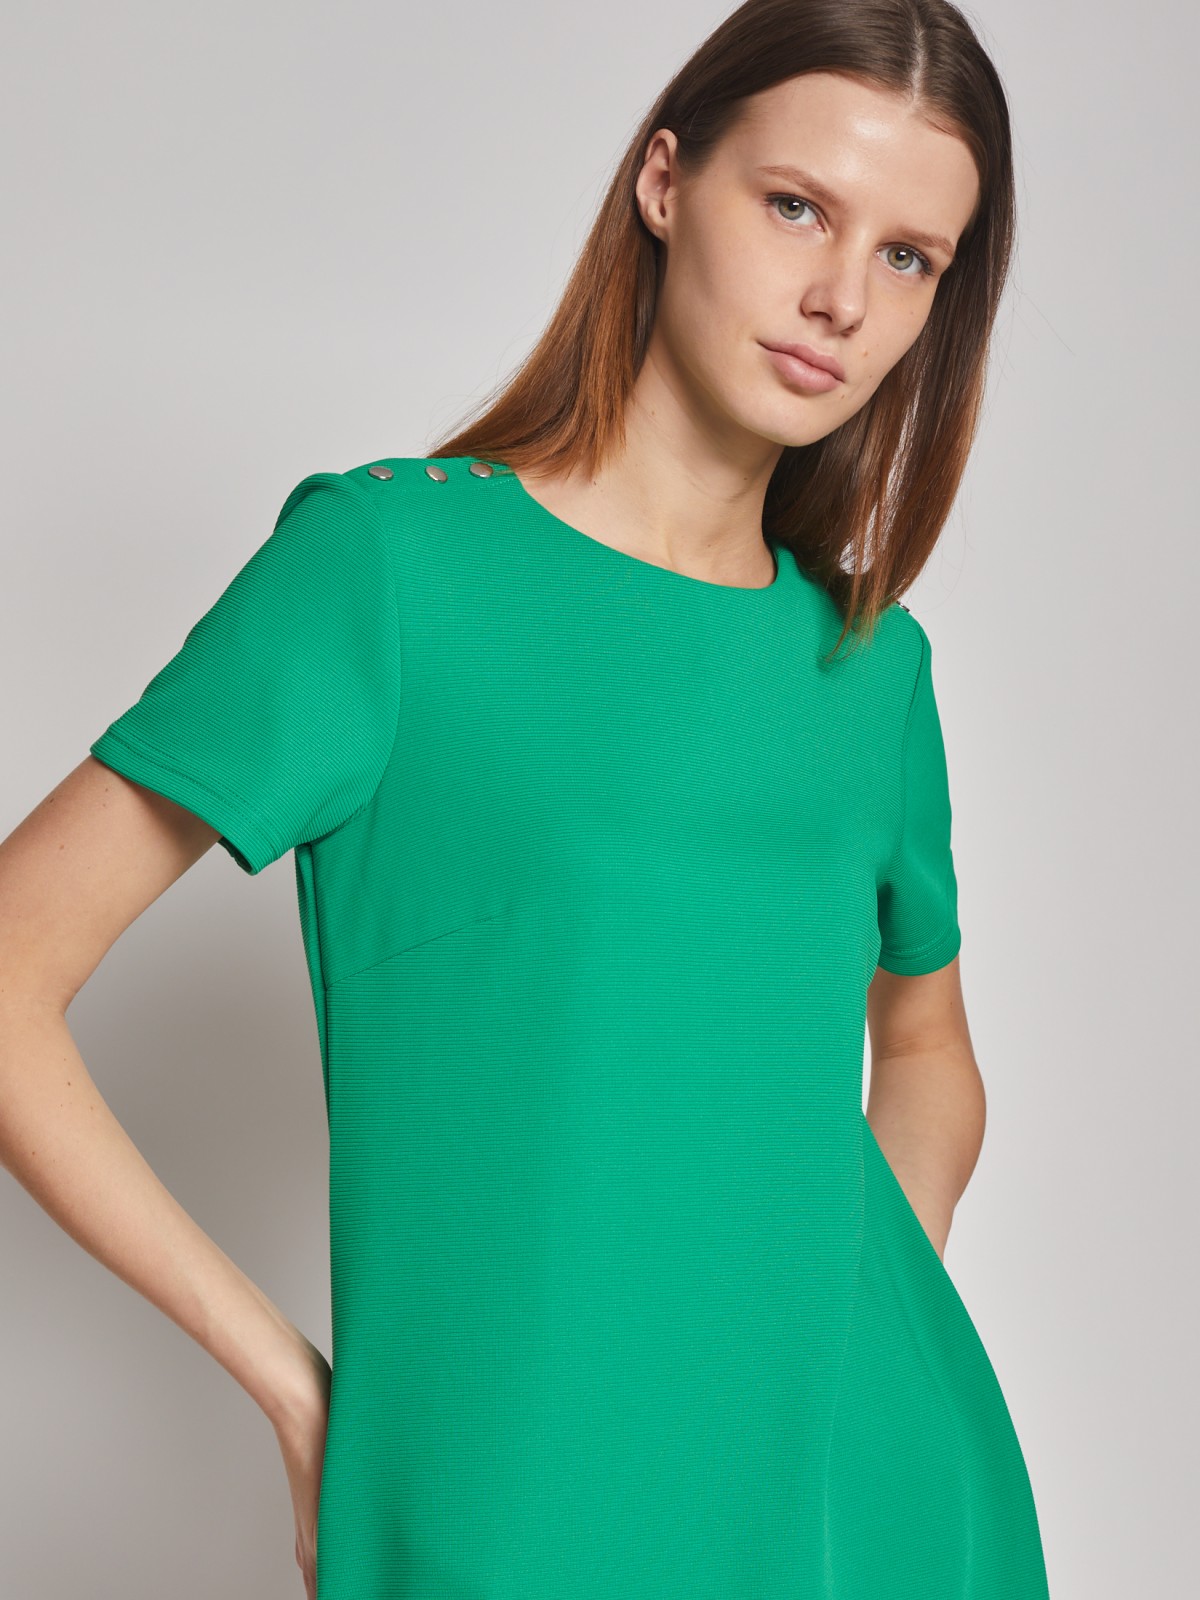 Платье кроеное zolla 02312819F032, цвет зеленый, размер S - фото 3